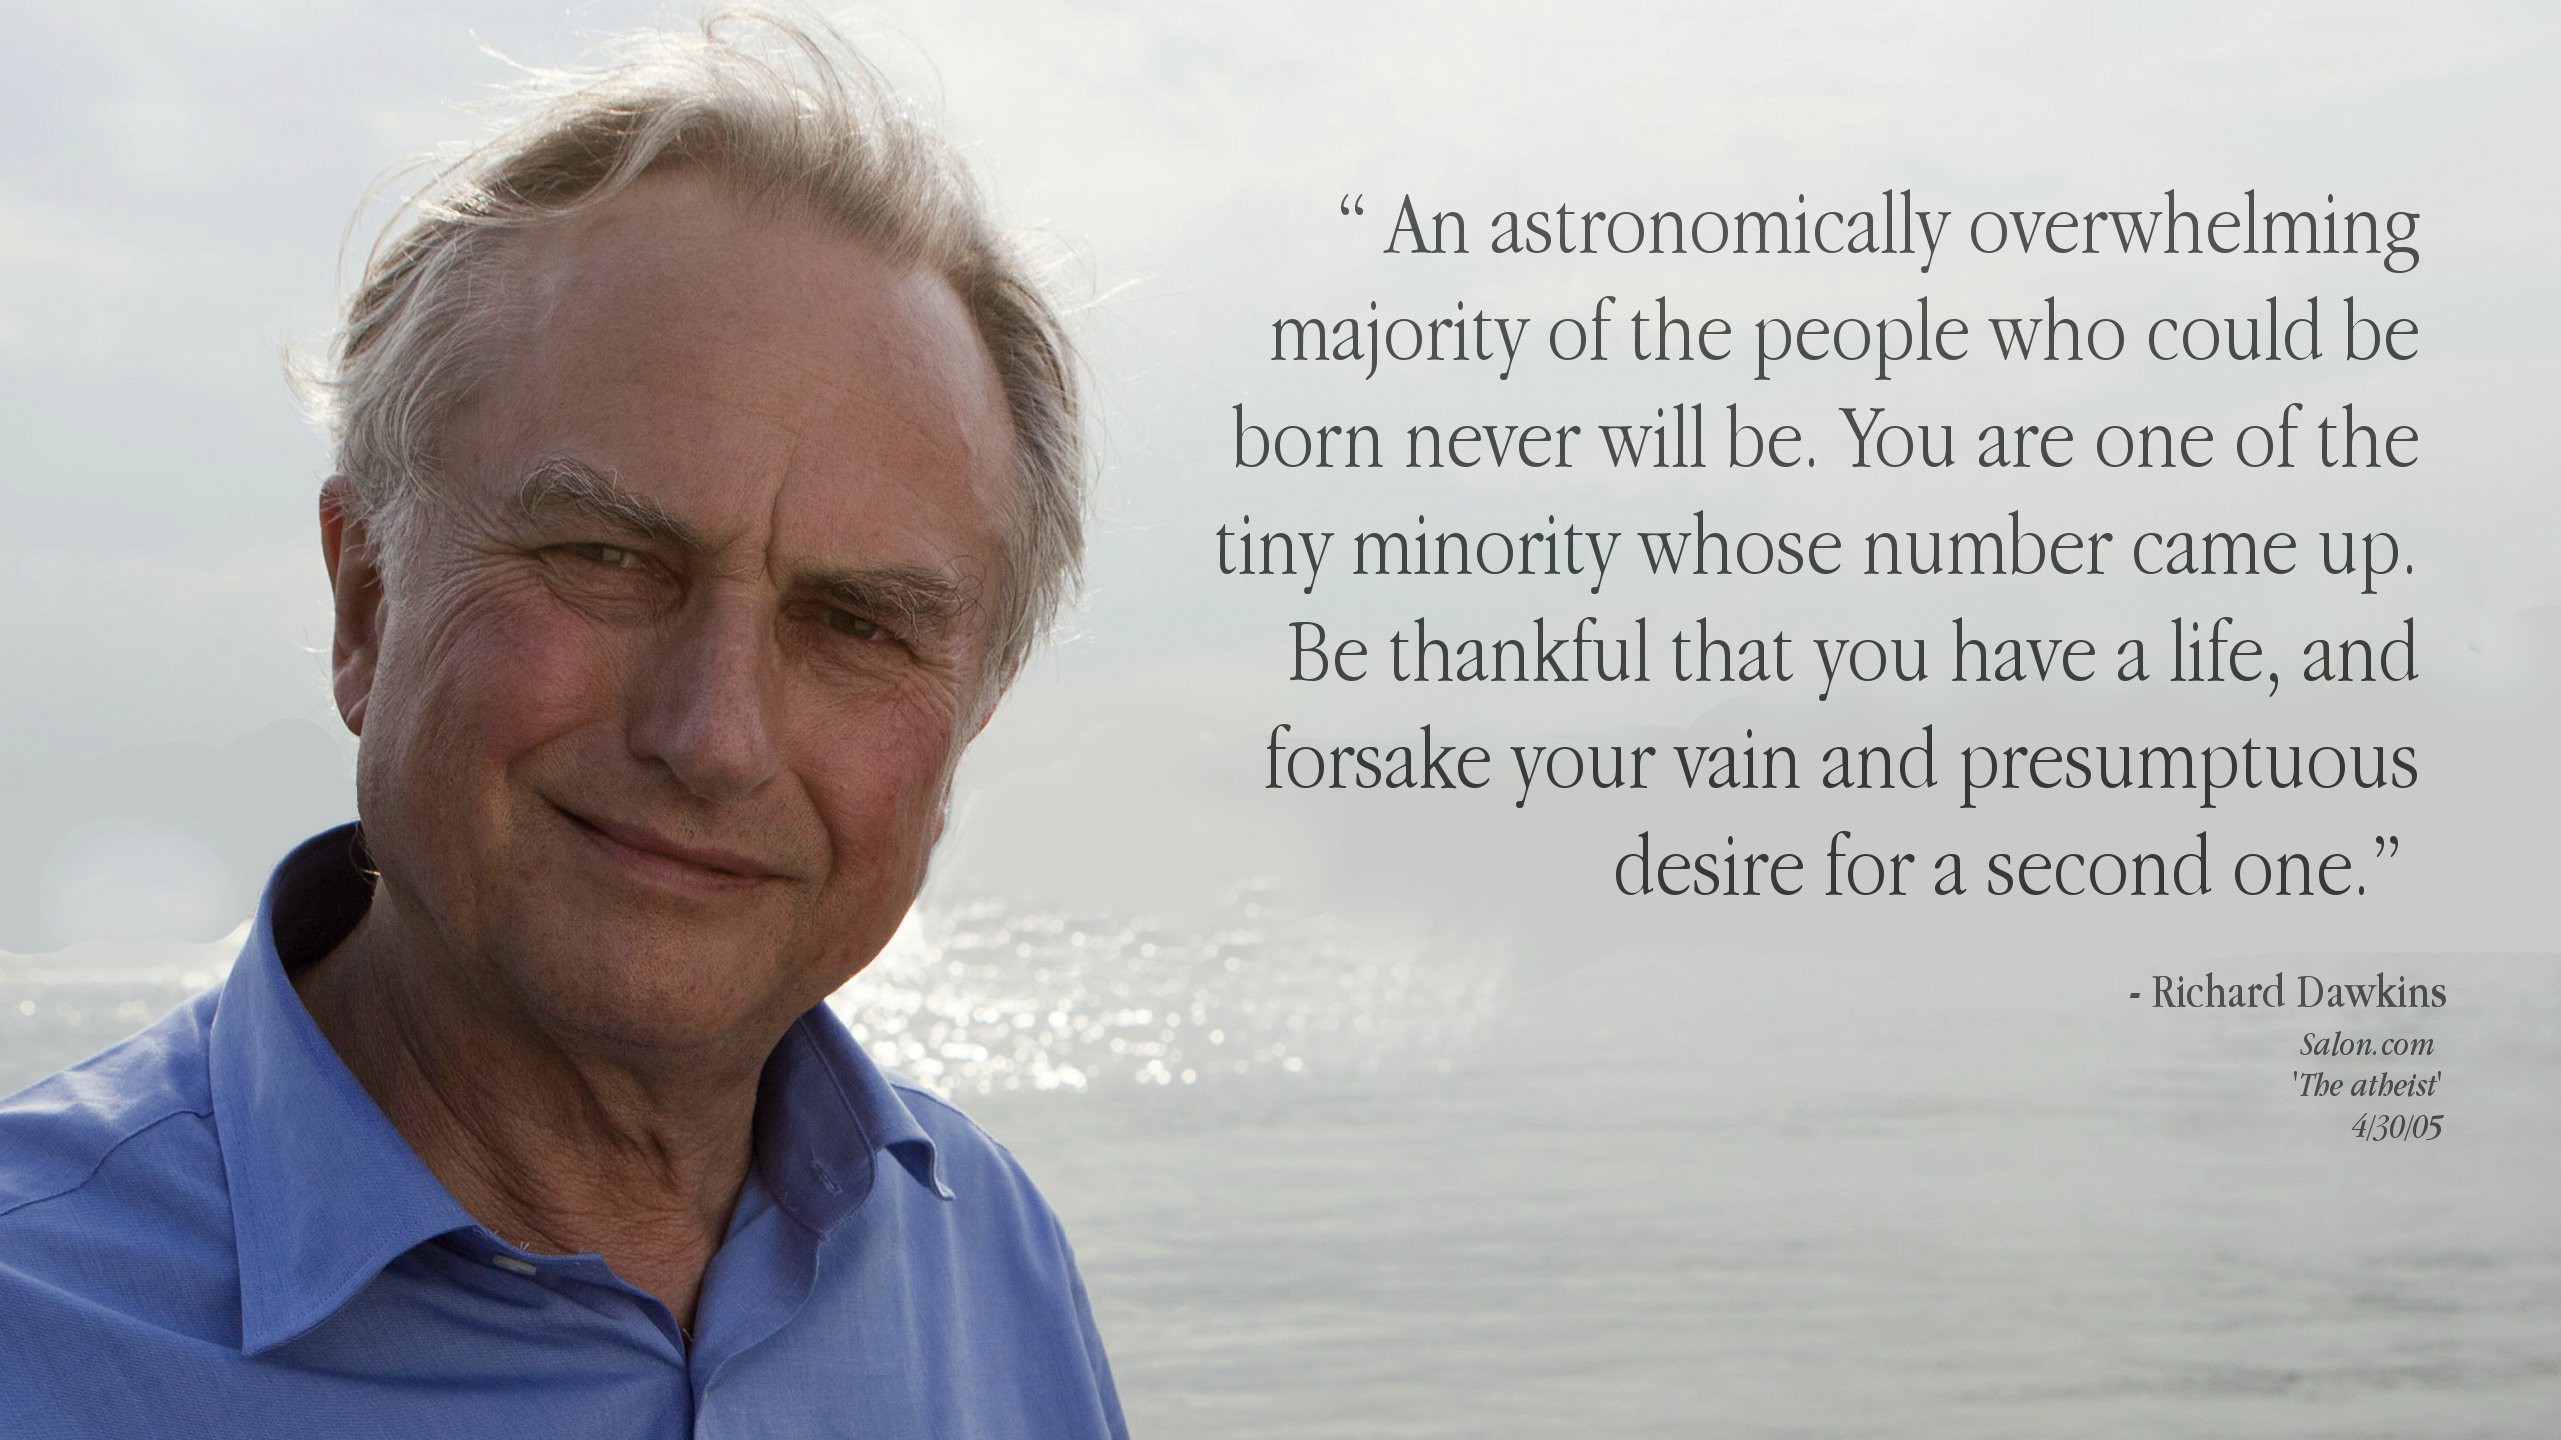 Richard Dawkins's quote #6